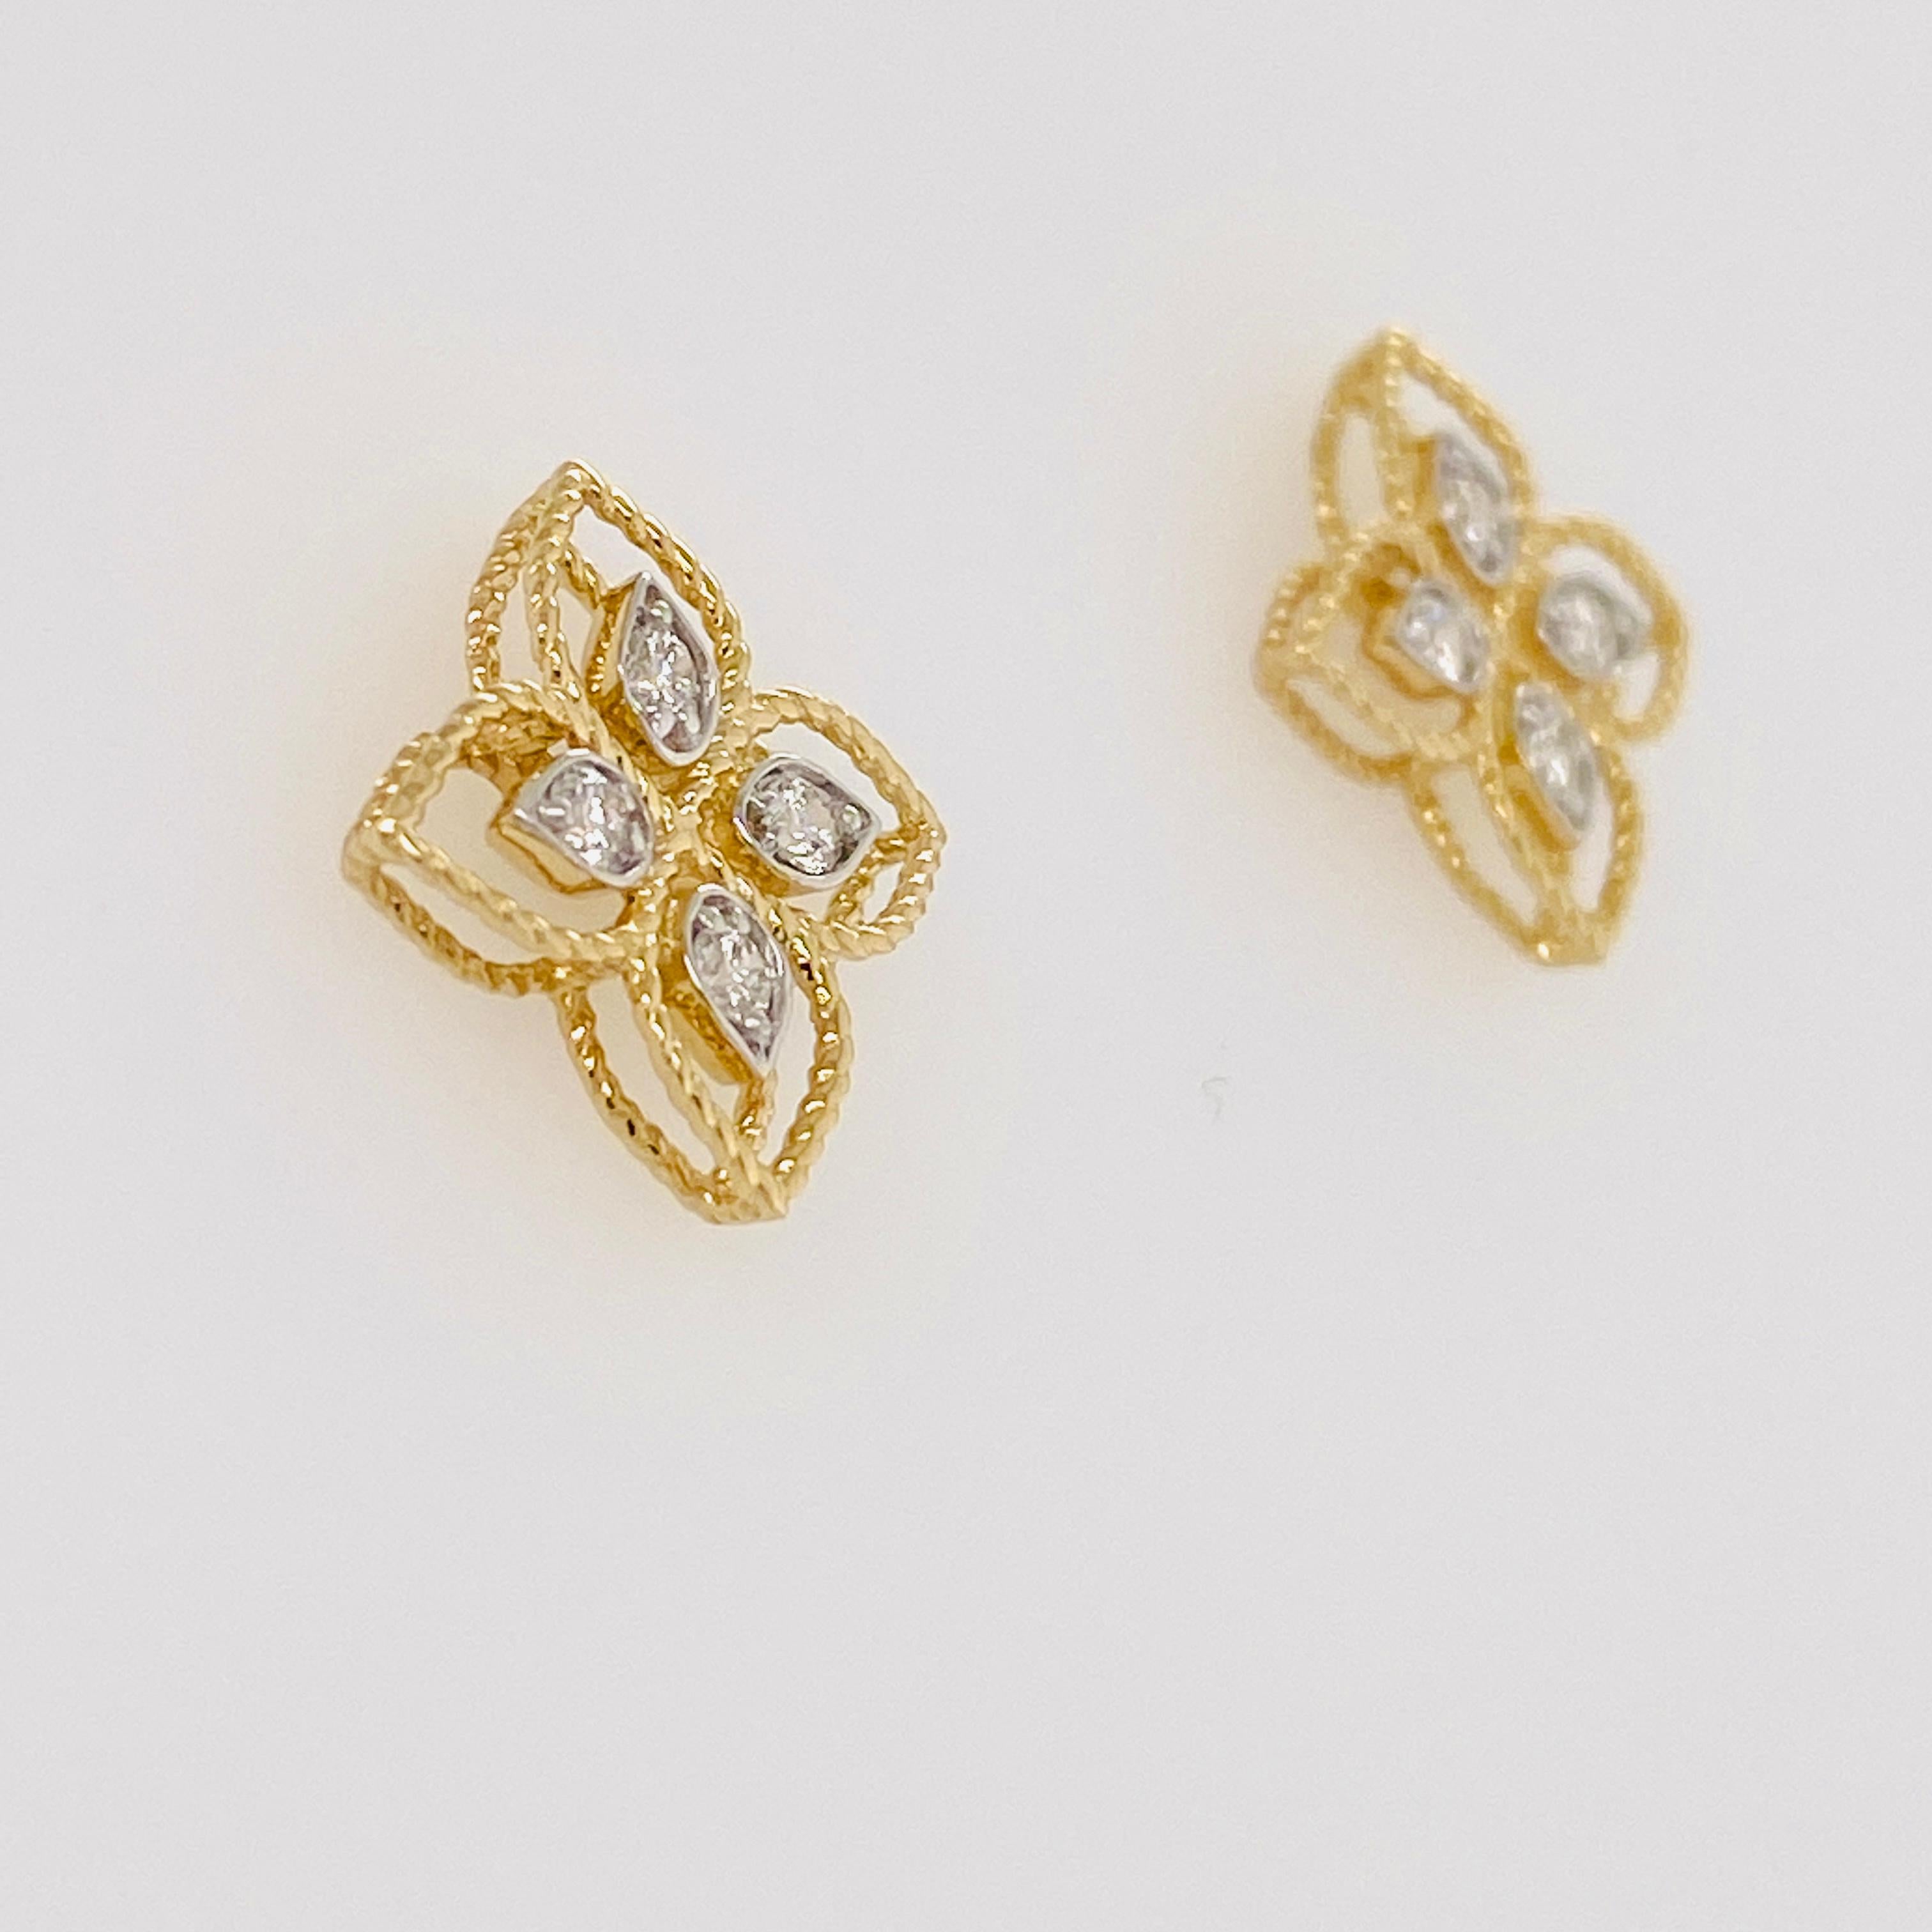 Diese komplizierten Ohrringe sind sehr detailliert mit einem Kleeblatt-Design, das vier Diamanten in jedem Ohrring hat. Die Ohrringe sind mit einem strukturierten Seilmuster versehen. Das Gewicht der Diamanten beträgt 0,18 Karat und die Diamanten